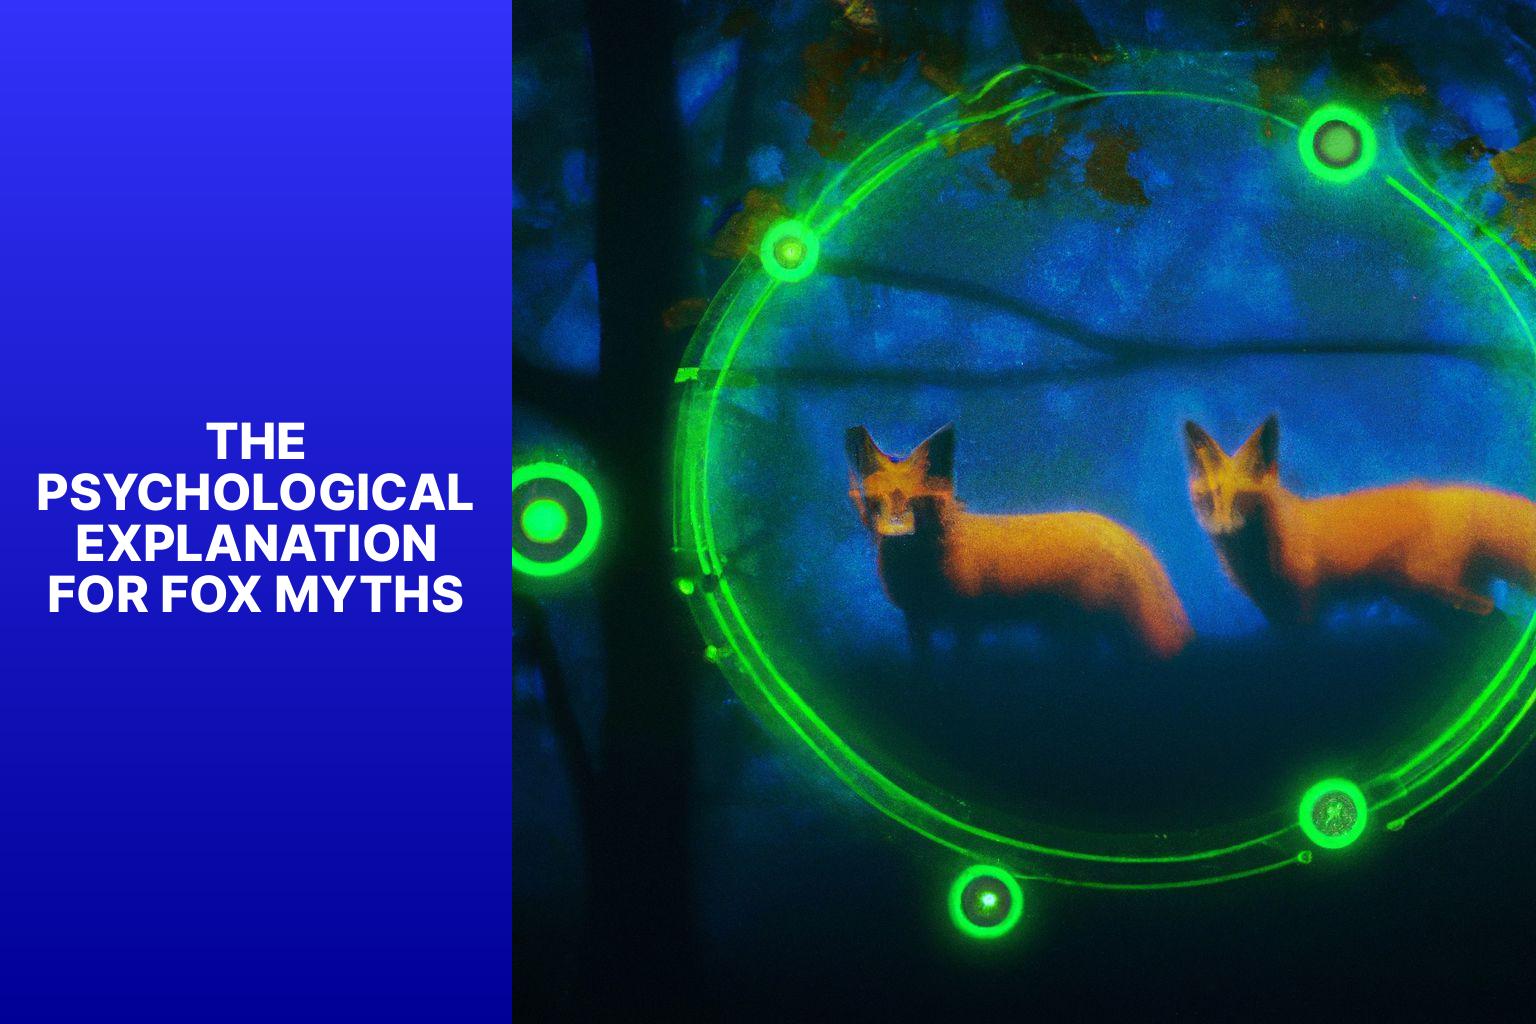 The Psychological Explanation for Fox Myths - Fox Myths in Ufology 